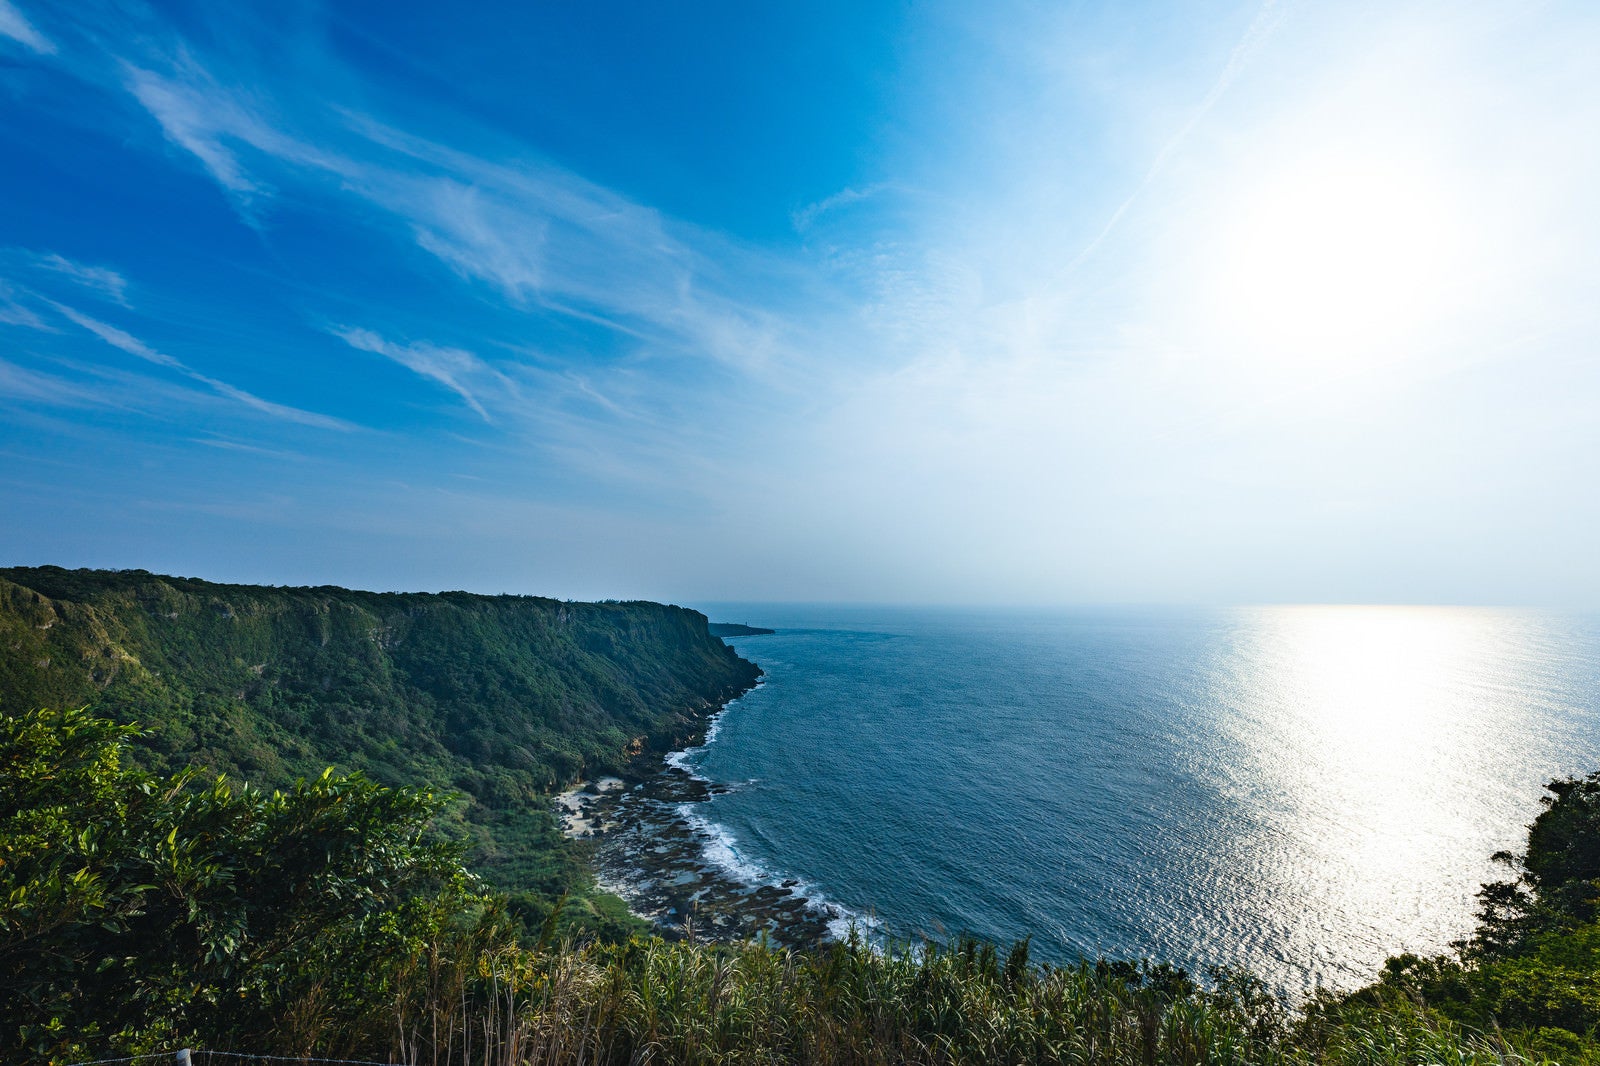 「徳之島犬田布岬の断崖絶壁と青空」の写真